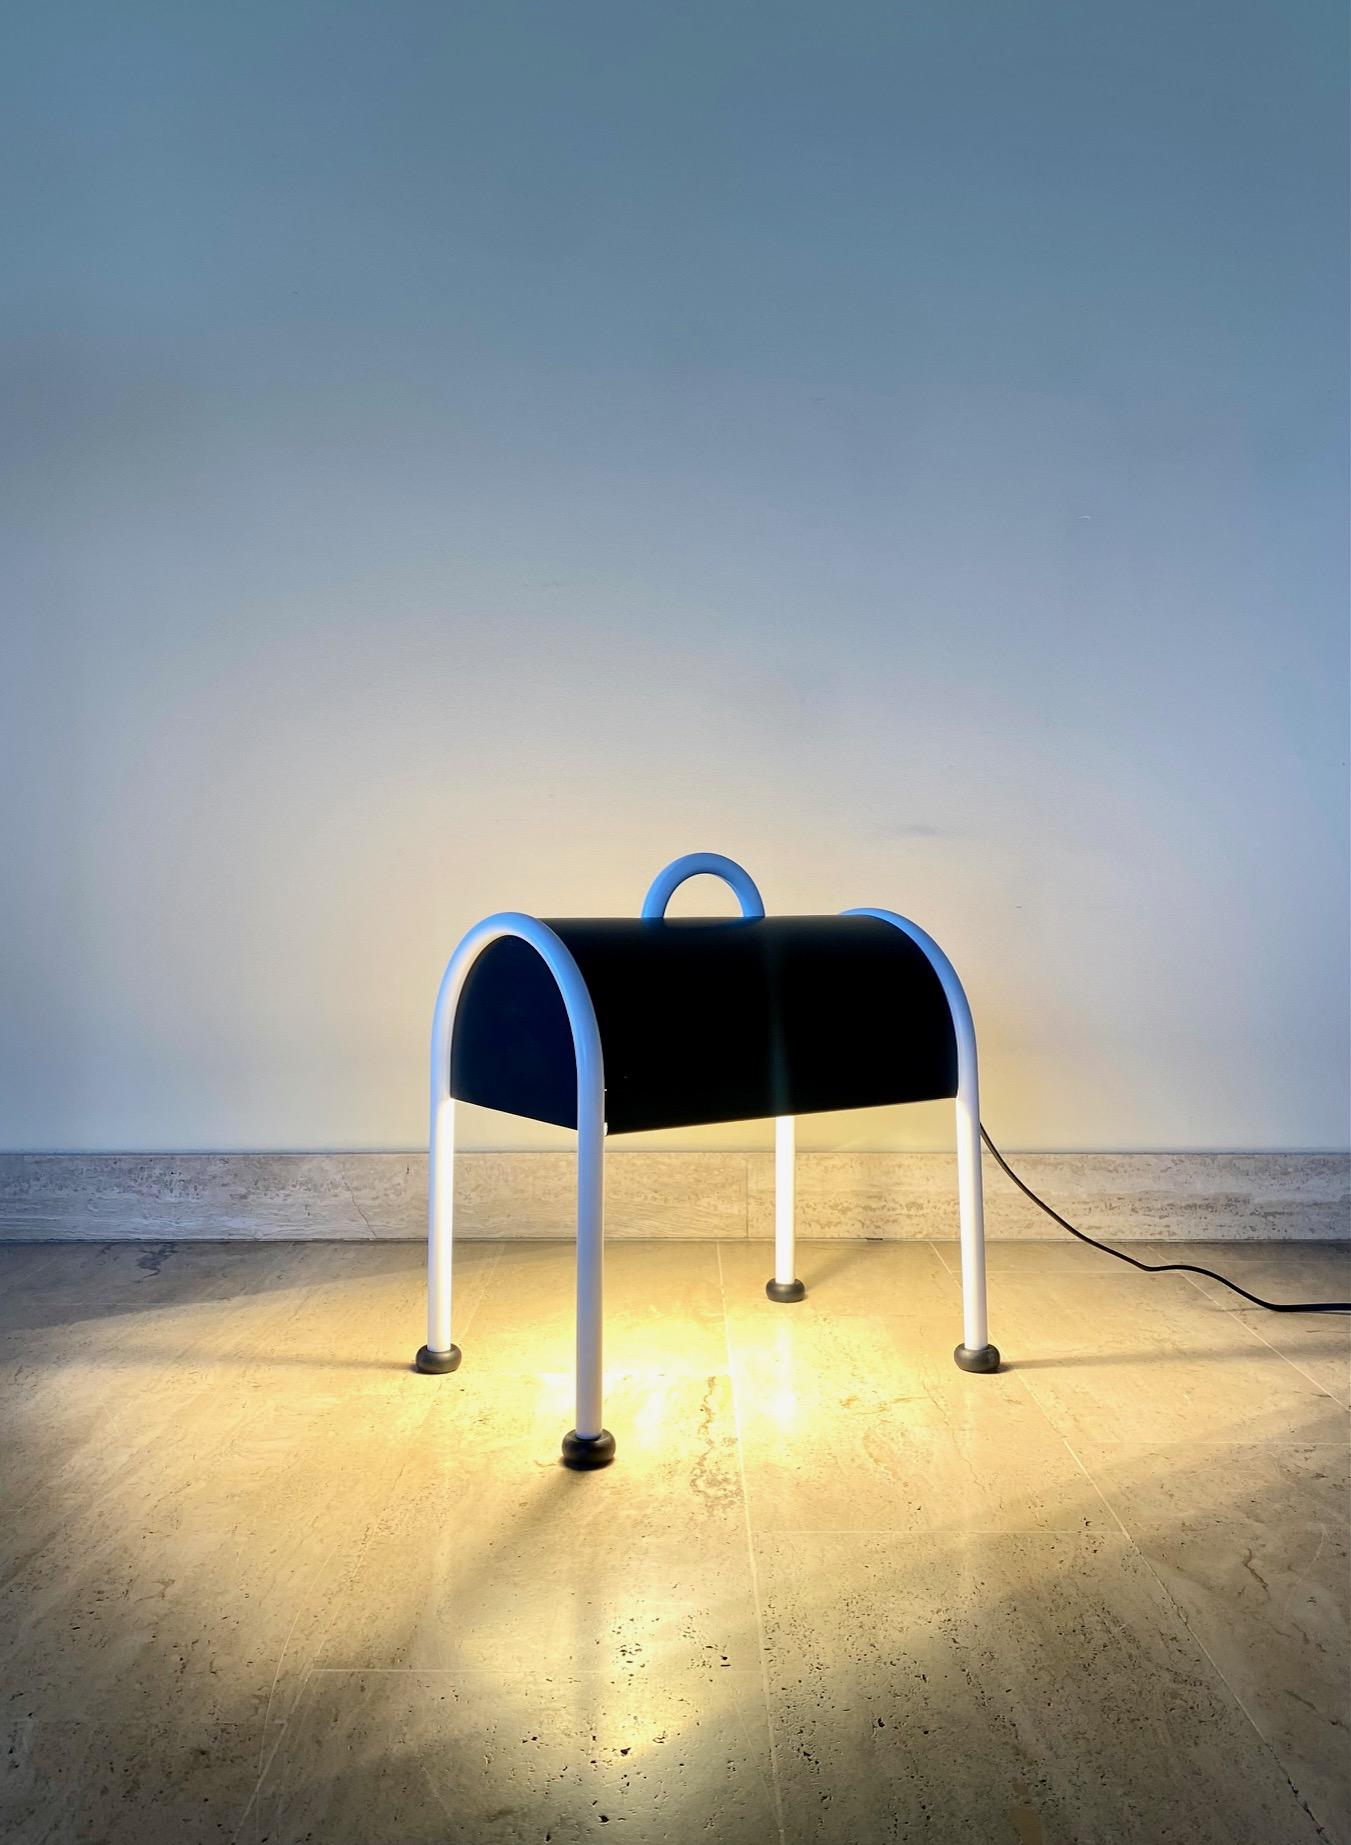 Lampadaire ou lampe de table Valigia de Sottsass pour Stilnovo, 1970

Lampe de table ou lampadaire Valigia avec structure tubulaire en acier tubulaire peint en blanc. 
L'abat-jour en tôle est bicolore, avec un extérieur noir opaque et un intérieur